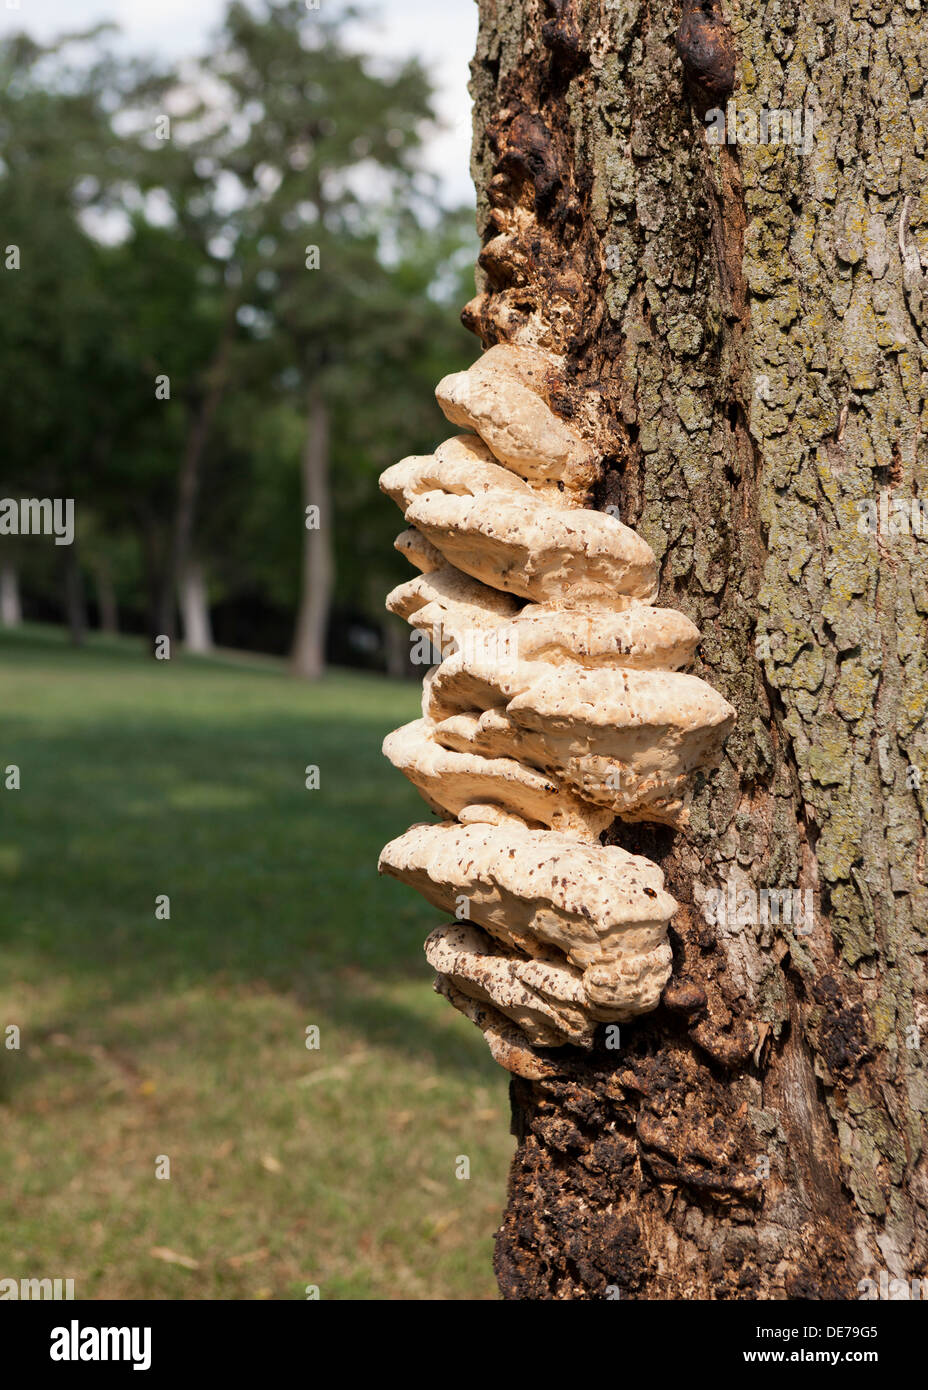 Bracket fungi, aka shelf fungi, growing on maple tree trunk (bracket fungus, shelf fungus) - USA Stock Photo